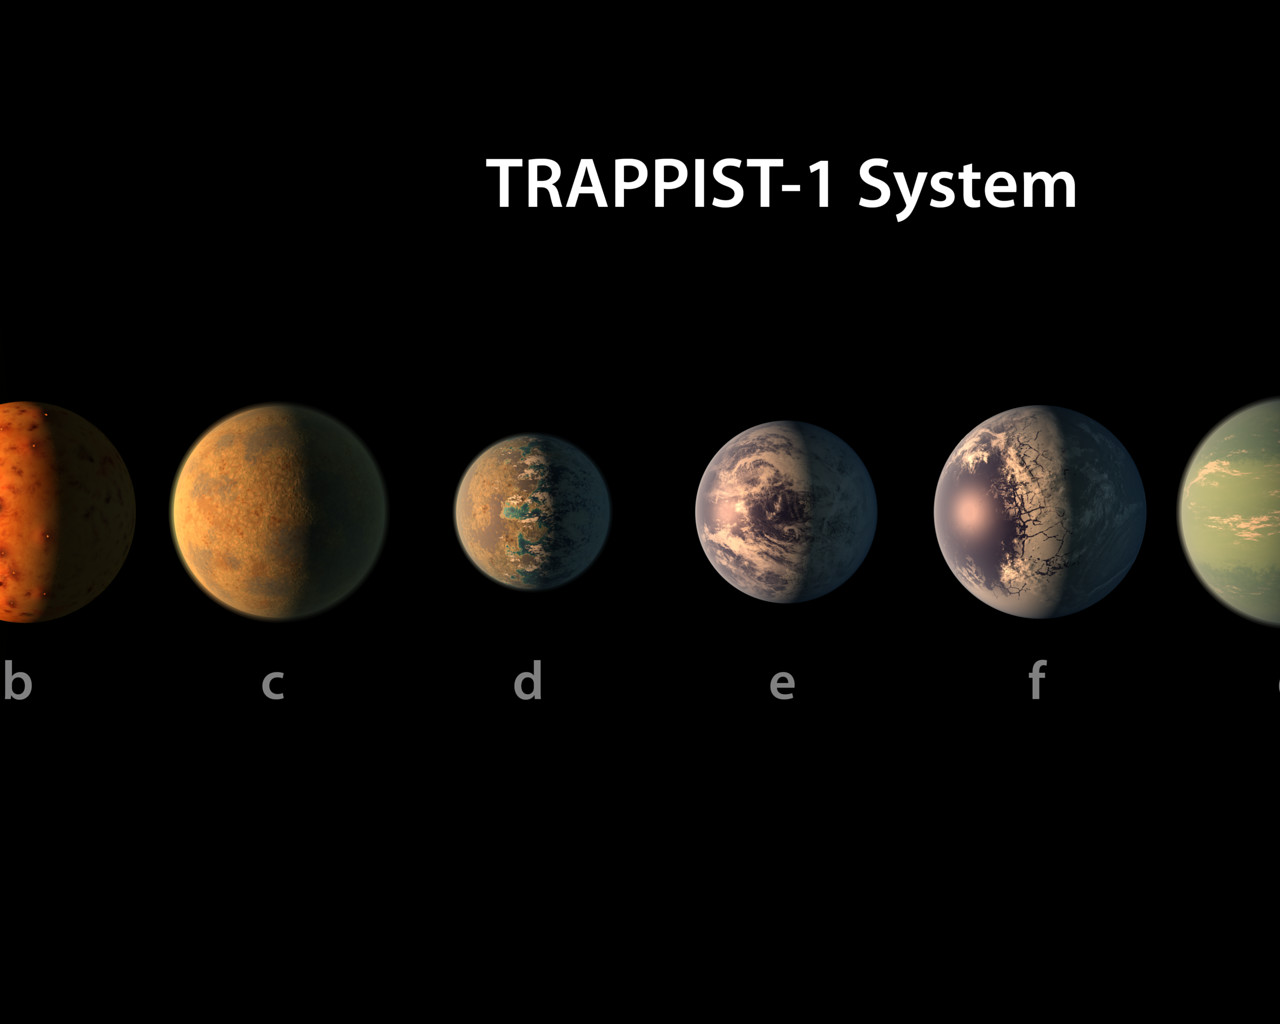 Vue des différentes exoplanètes du système TRAPPIST-1 dont 3 se trouvent dans la zone d'habitabilité de l'étoile.